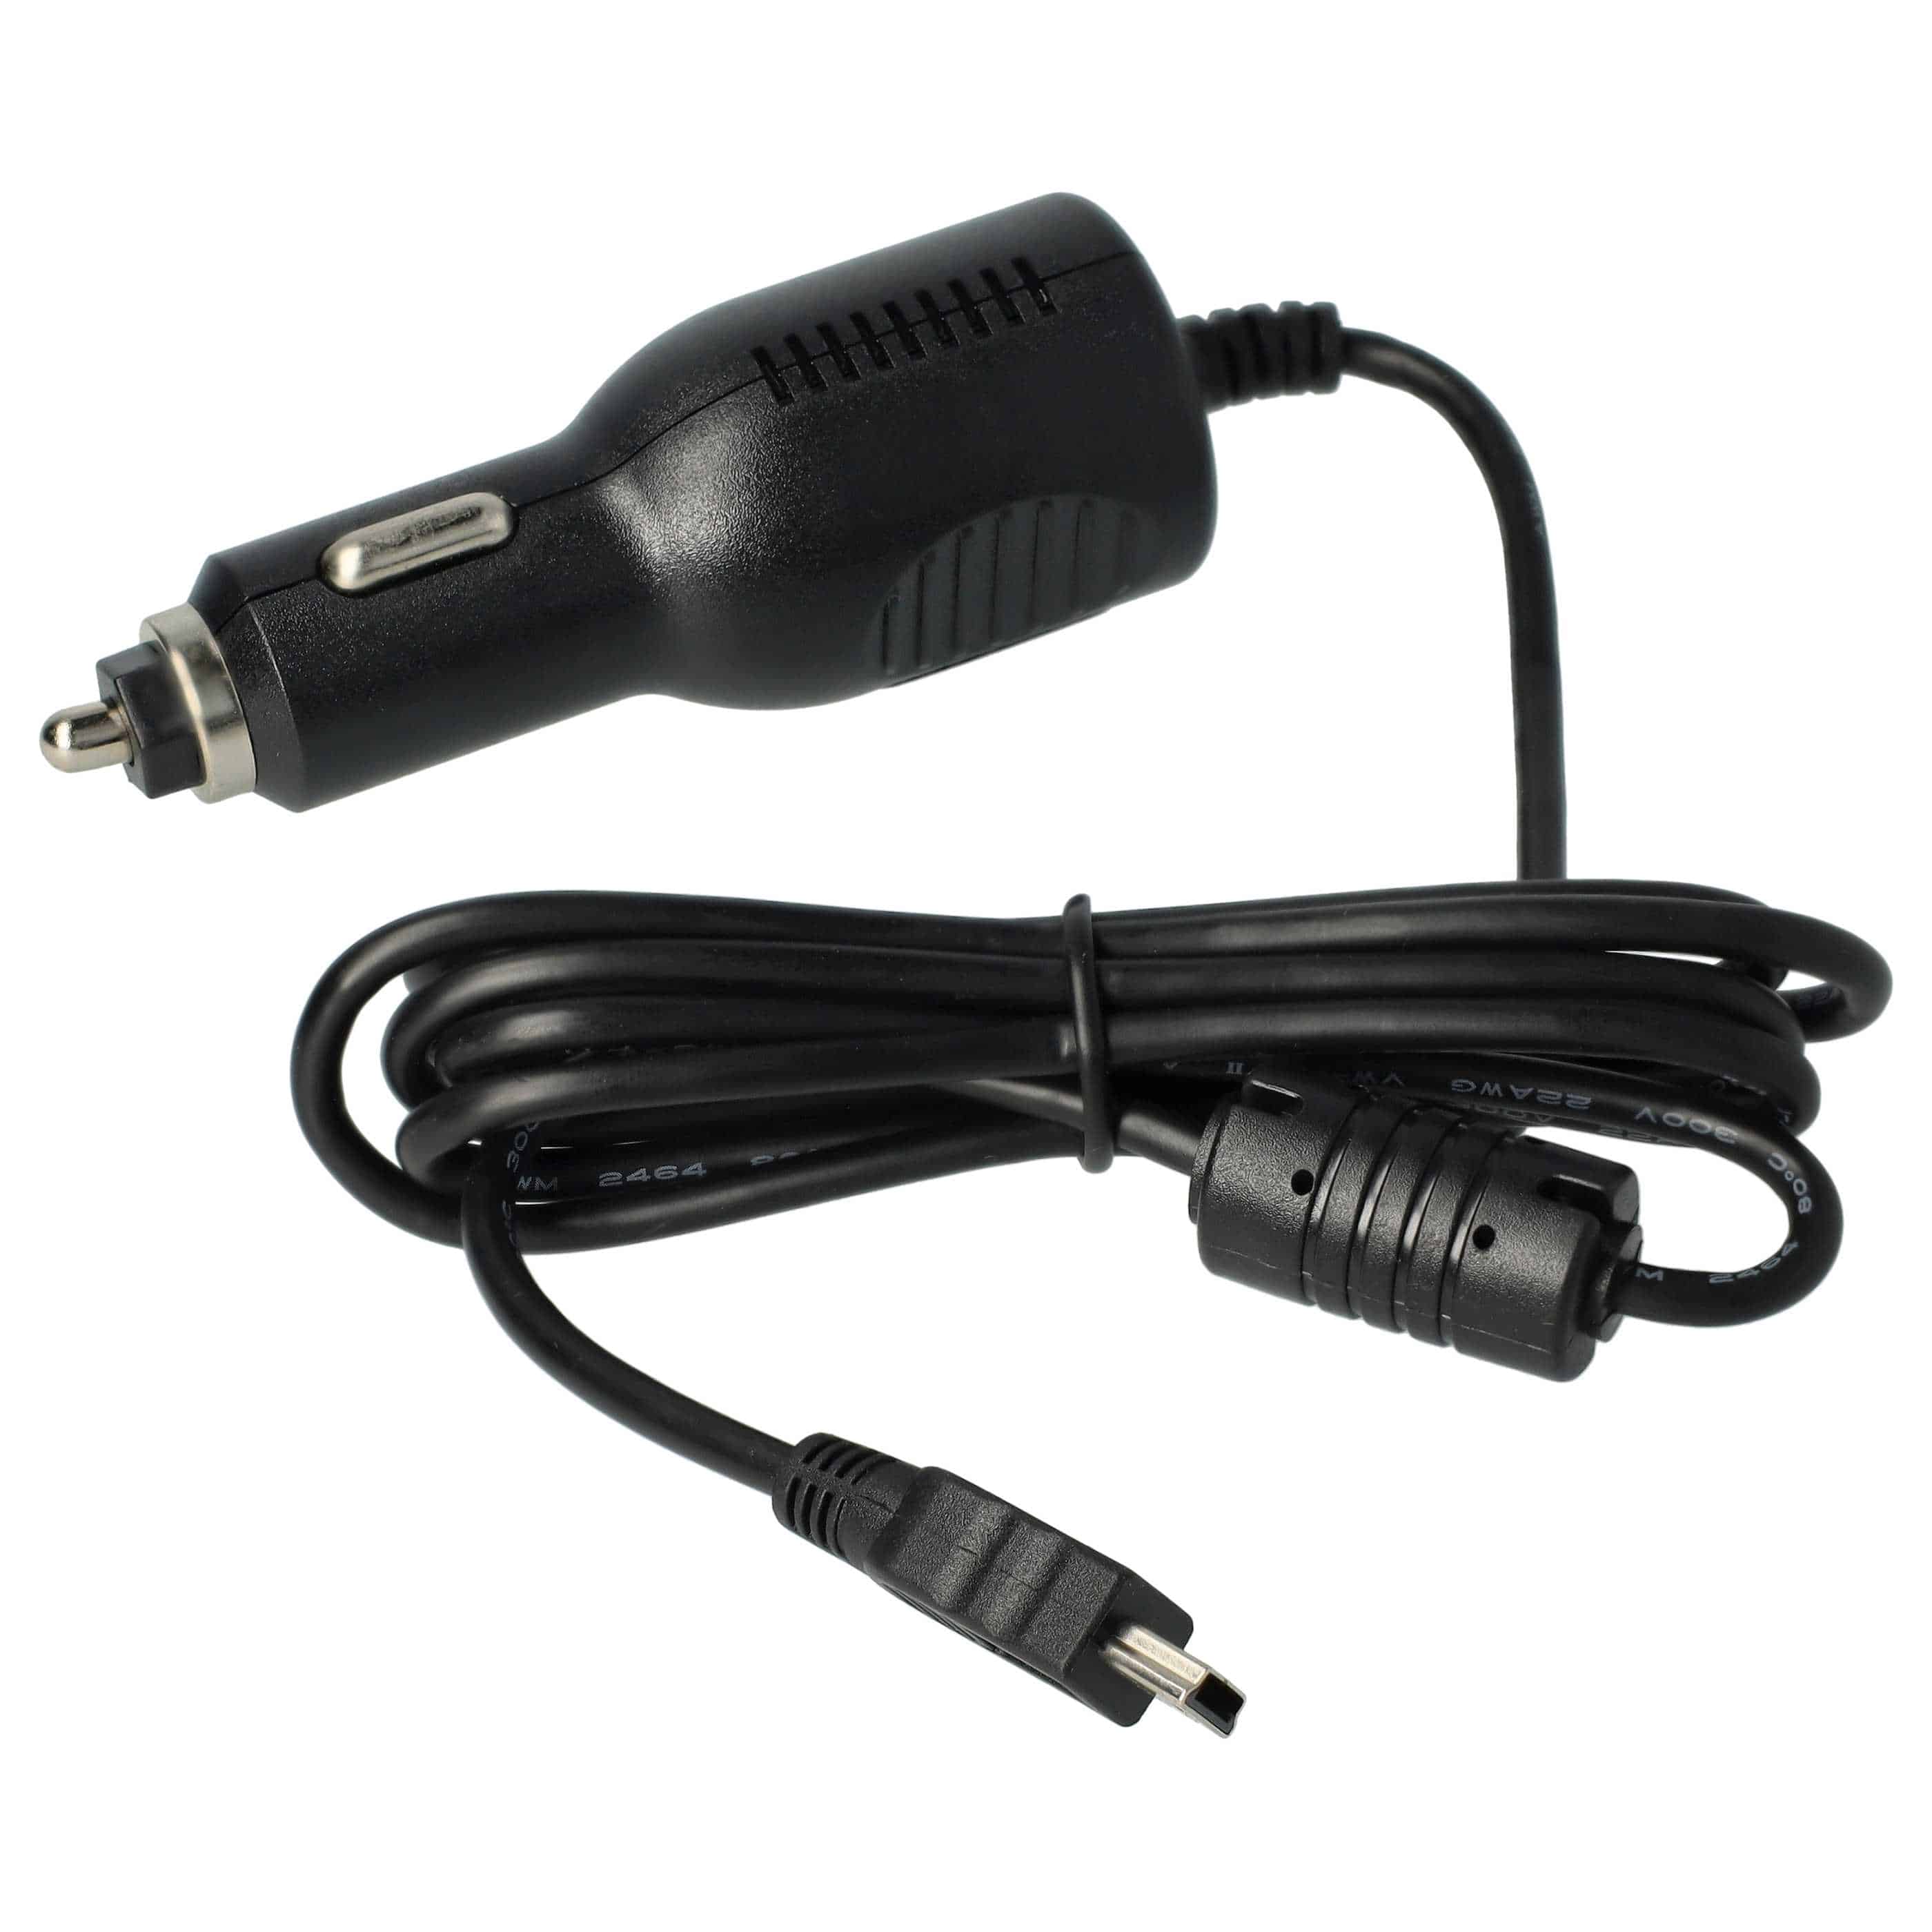 Chargeur voiture mini-USB 2,0 A pour GPS - allume-cigare, antenne TMC intégrée